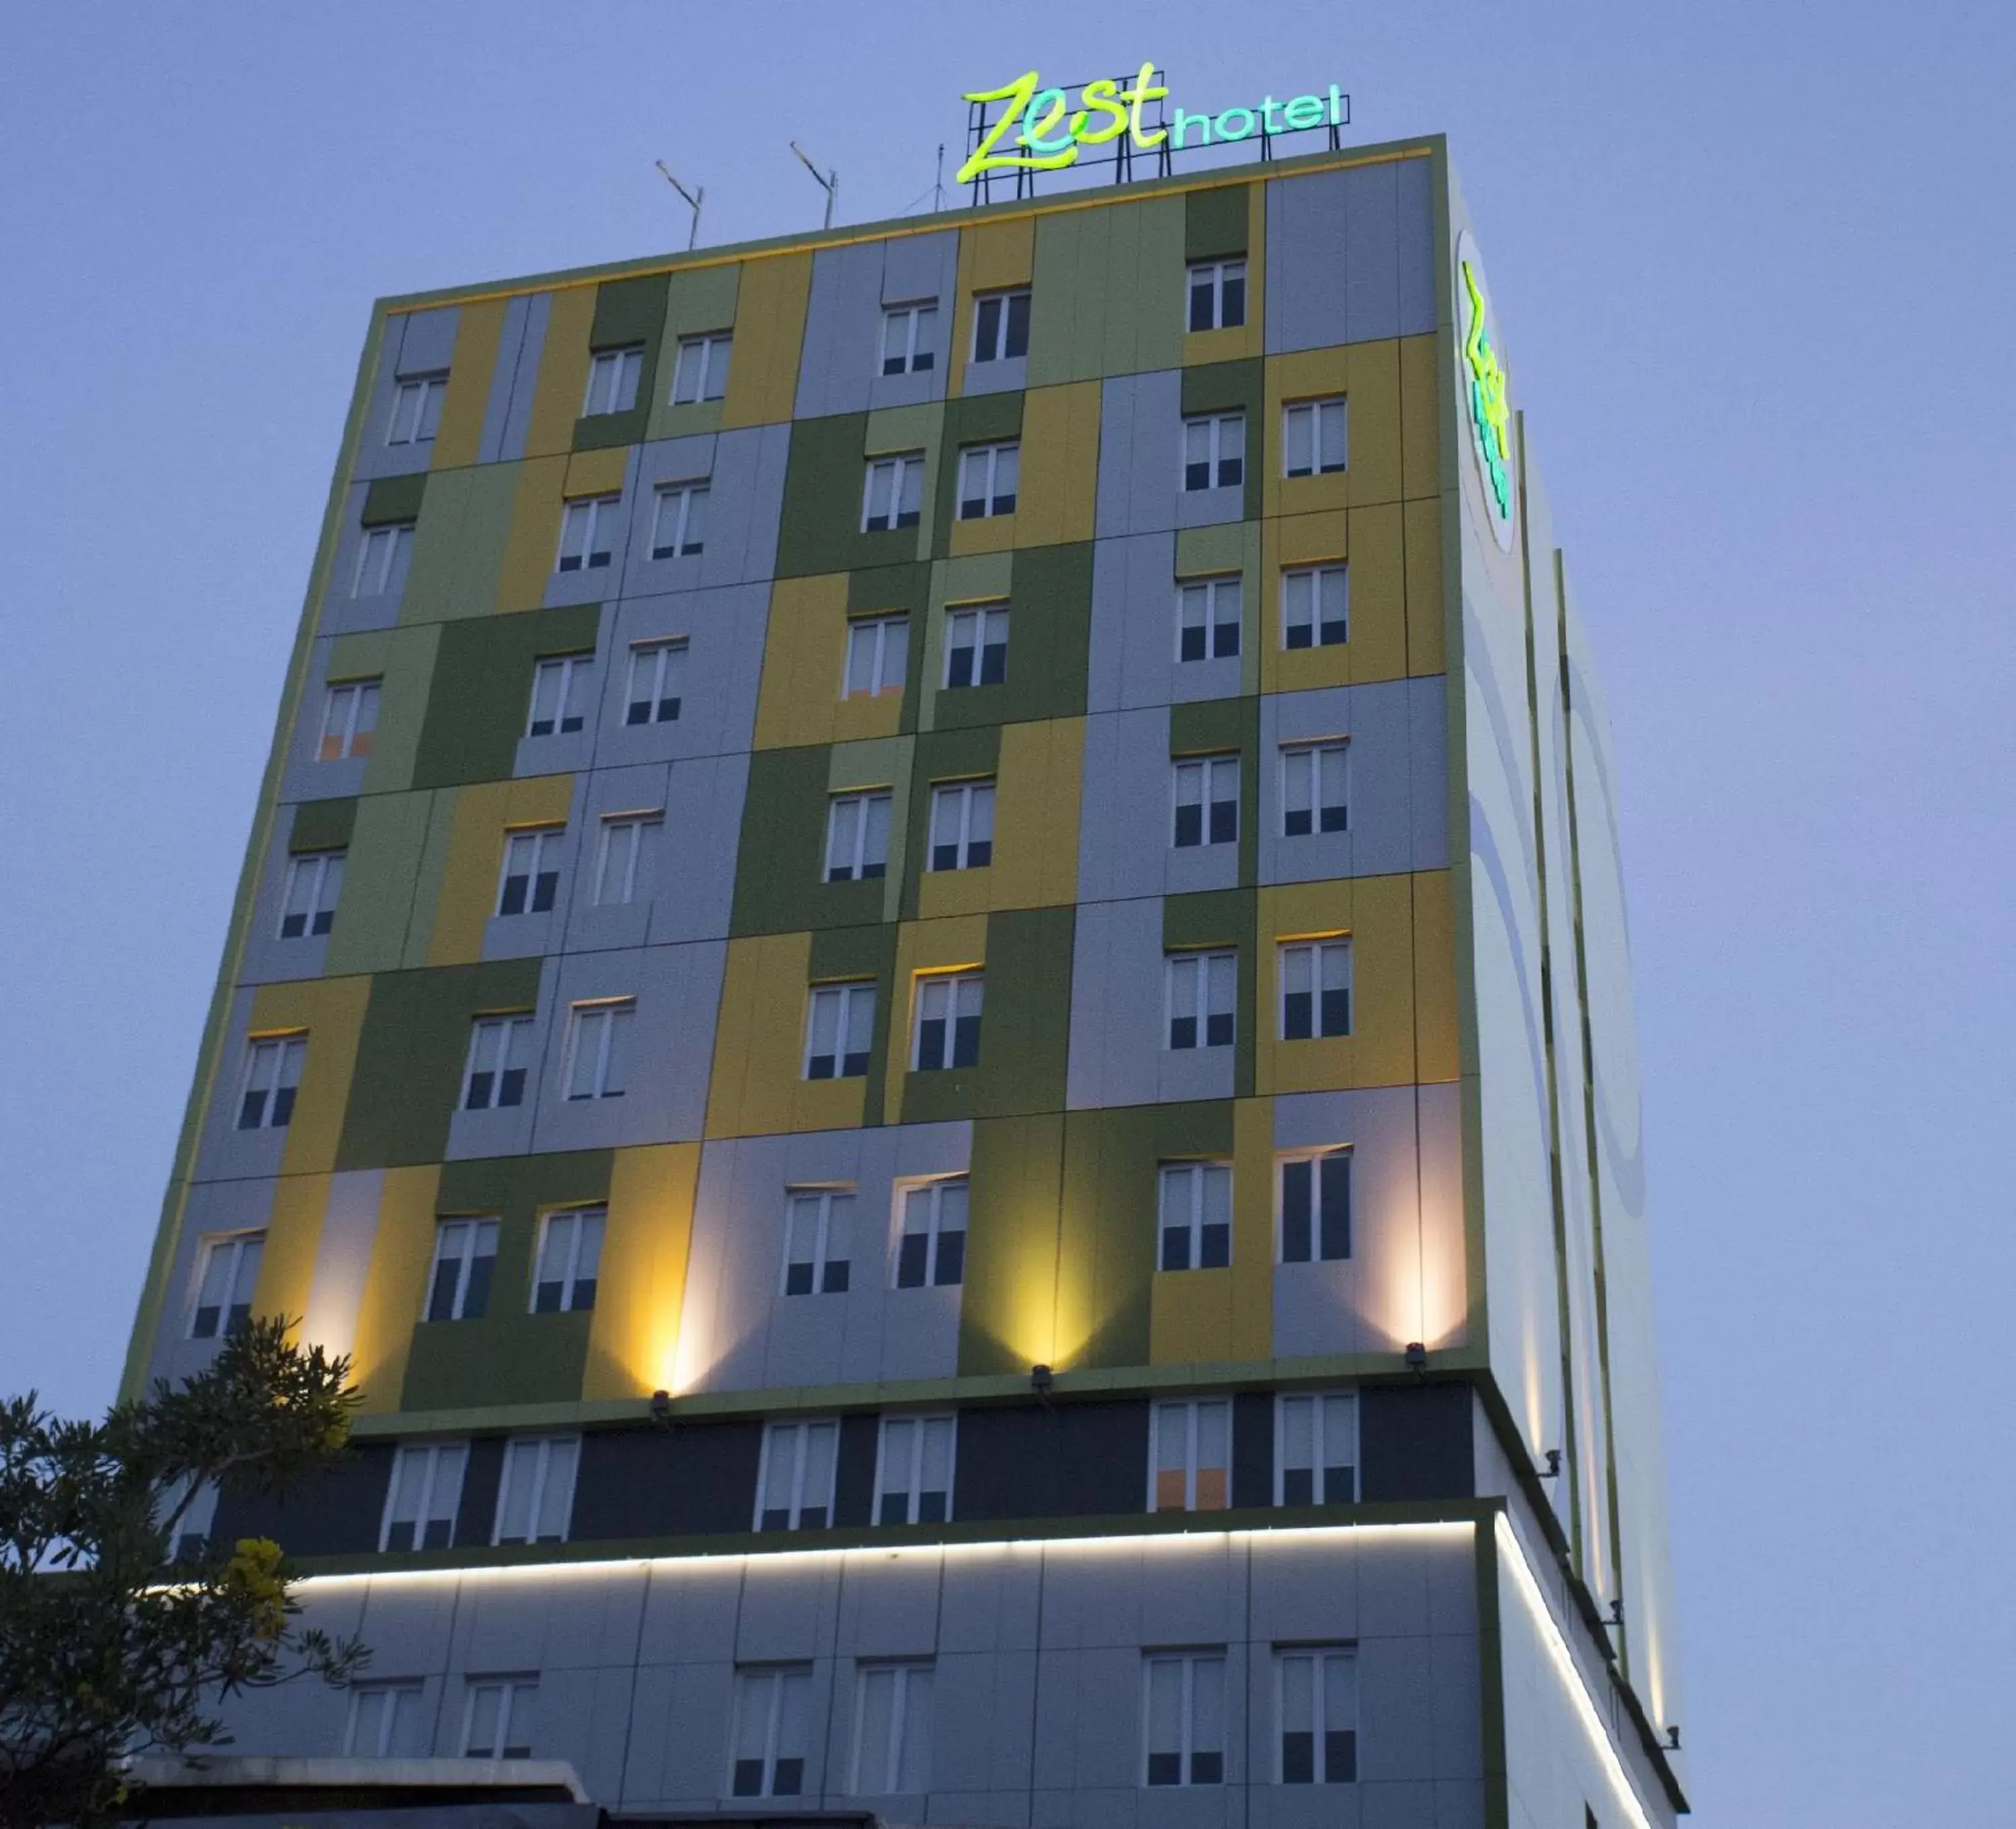 Property Building in Zest Hotel Jemursari